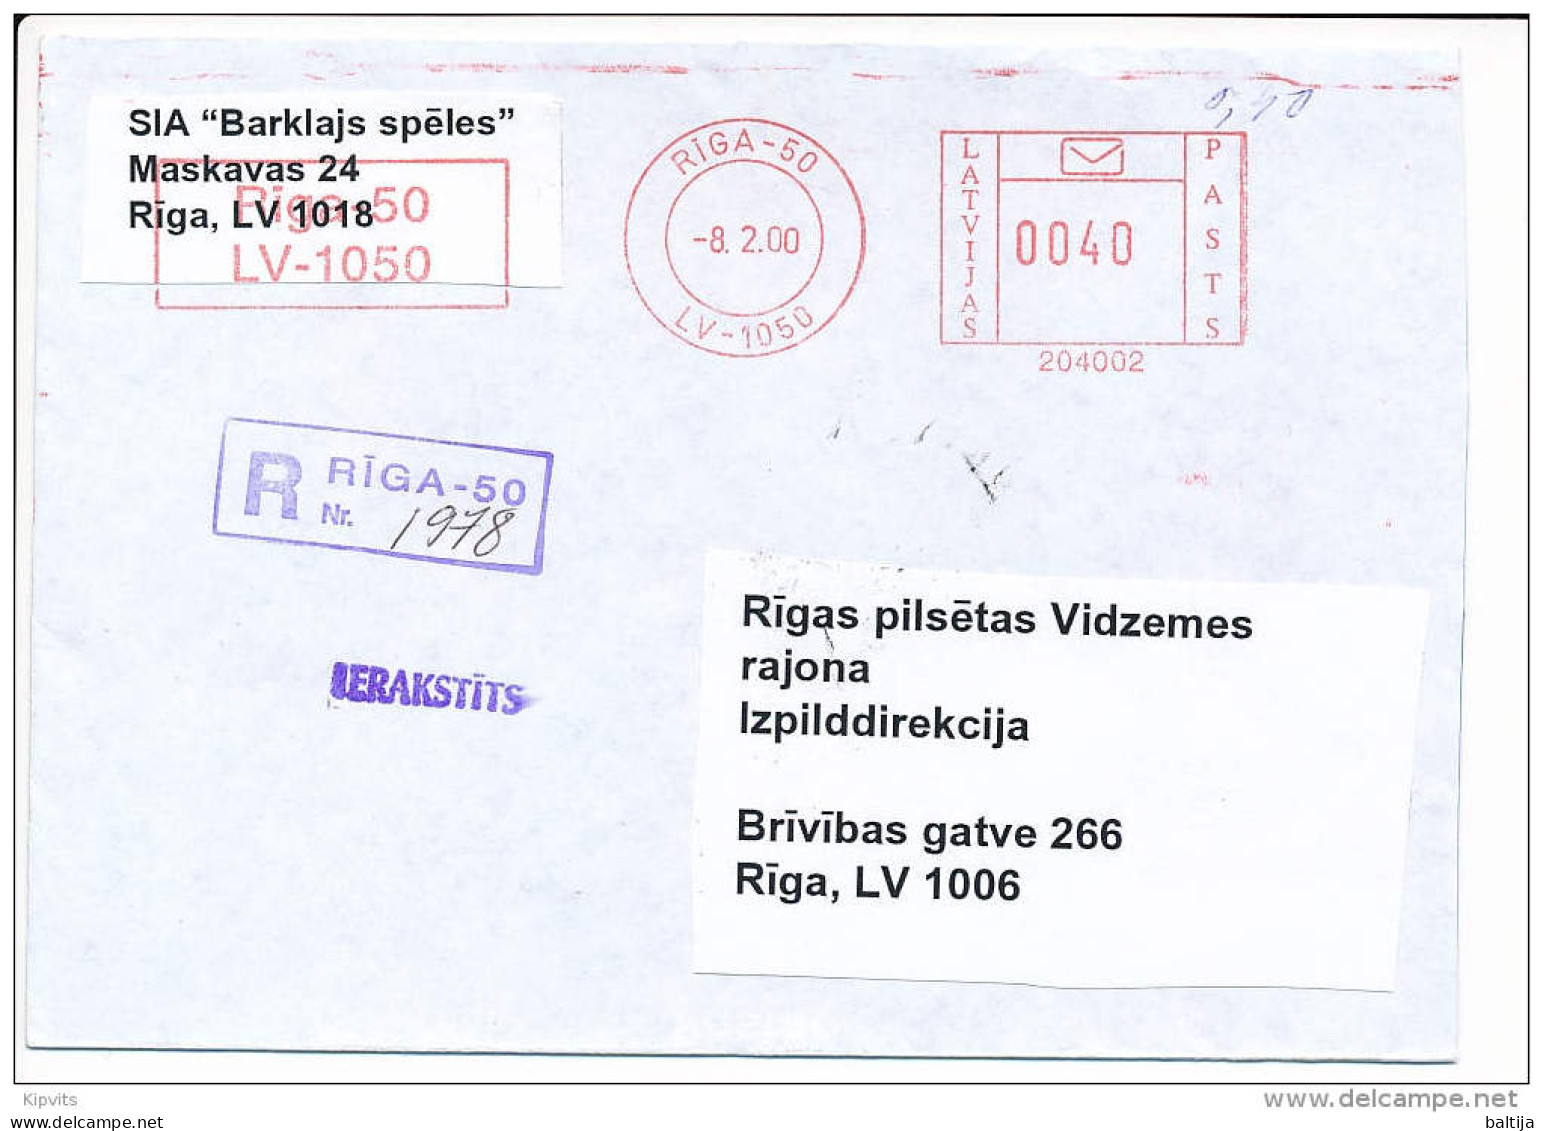 Registered Post Office Meter Cover / 204002 - 8 February 2000 Riga-50 - Lettland